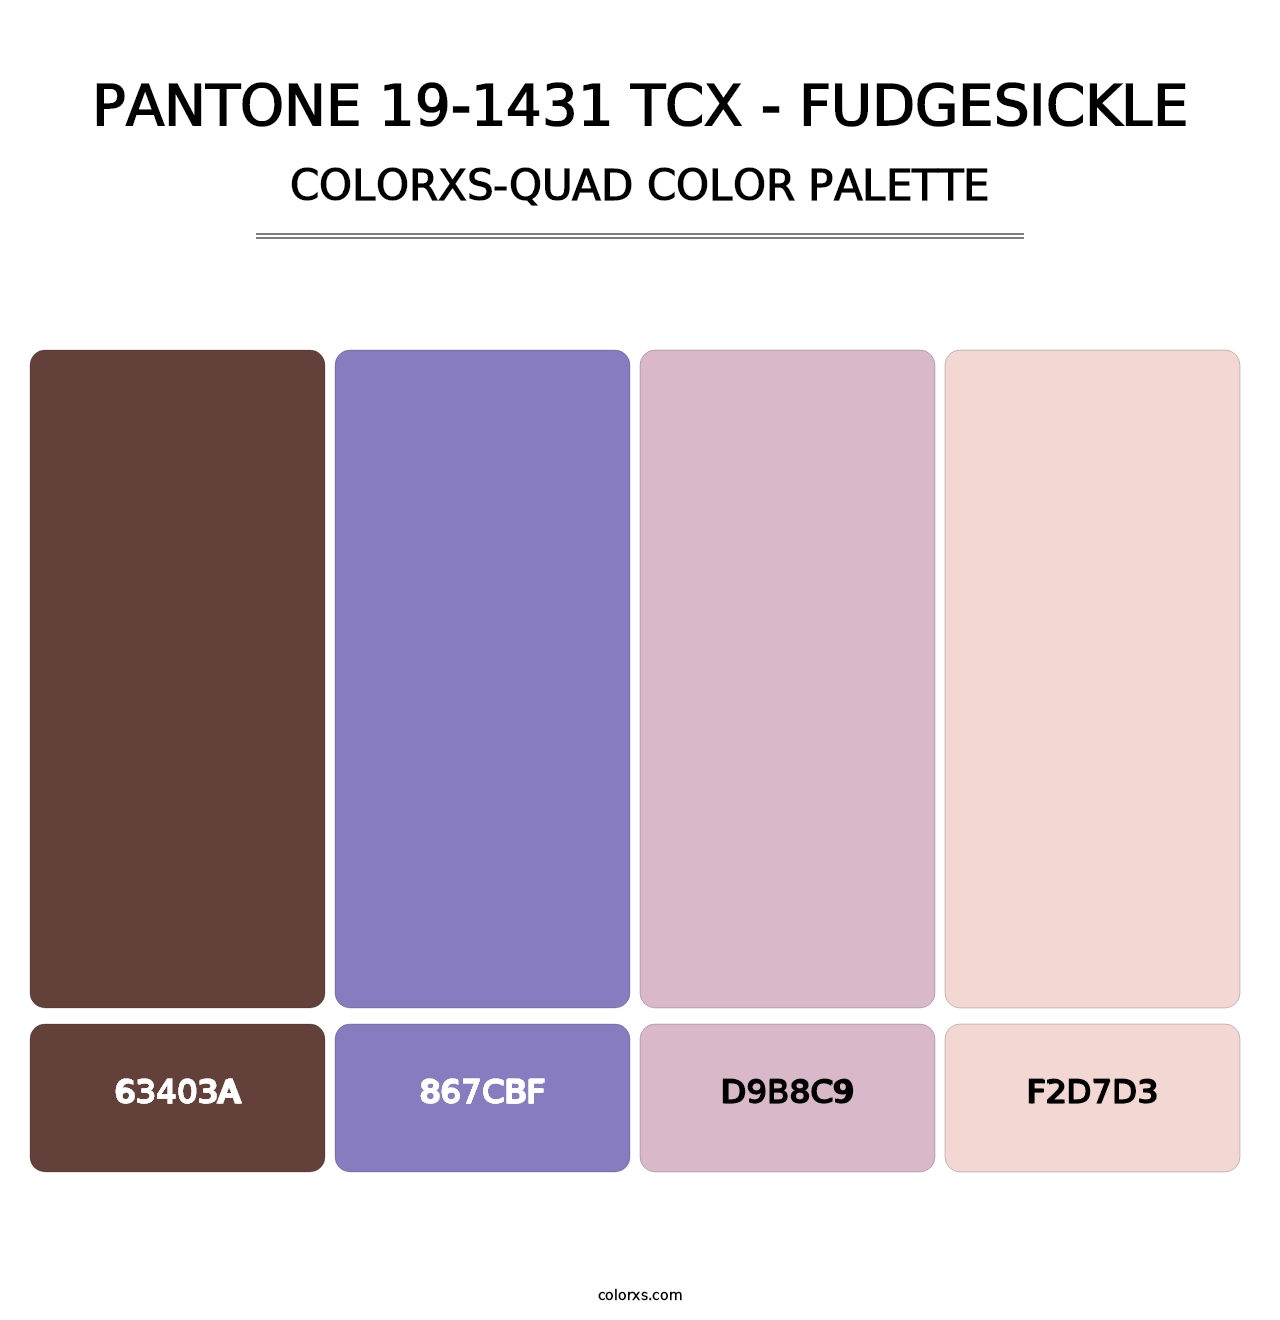 PANTONE 19-1431 TCX - Fudgesickle - Colorxs Quad Palette